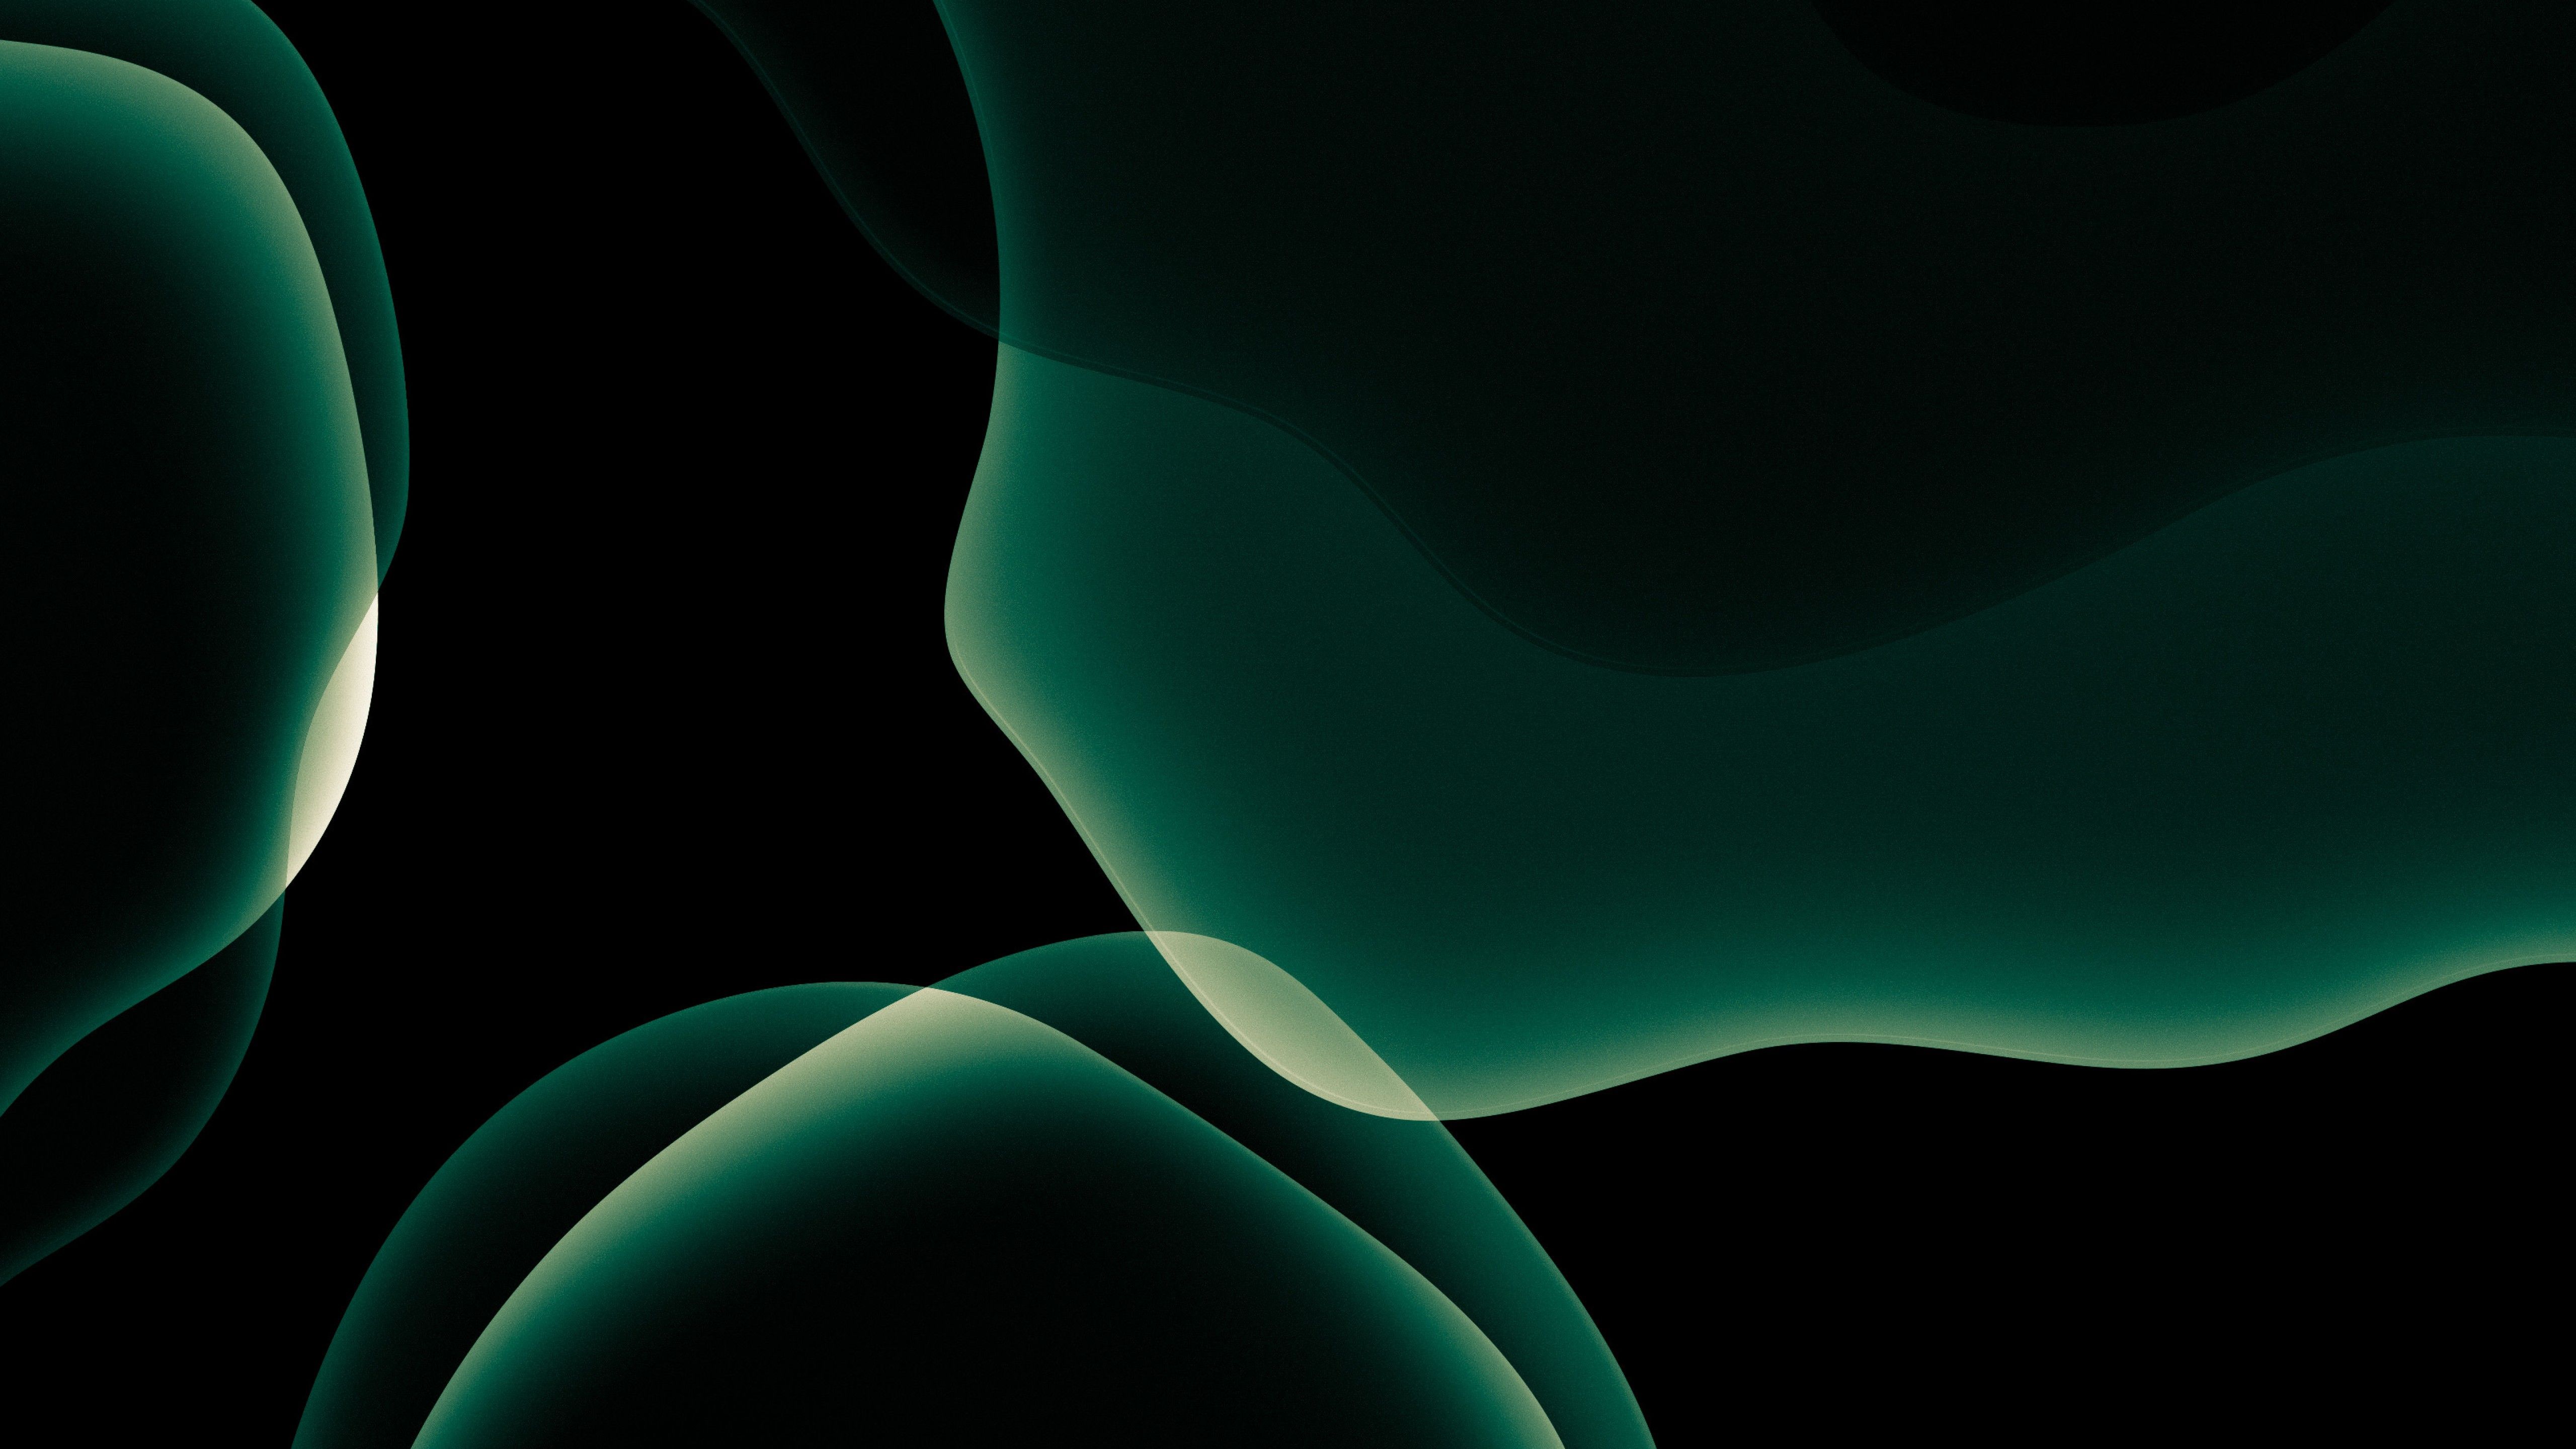 Siêu phẩm hình nền Amoled màu xanh lá cây 4k sẽ mang đến cho bạn một trải nghiệm tuyệt vời với độ sáng sắc nét và độ tương phản cao nhất. Hãy nhấn play để khám phá và trải nghiệm ngay.